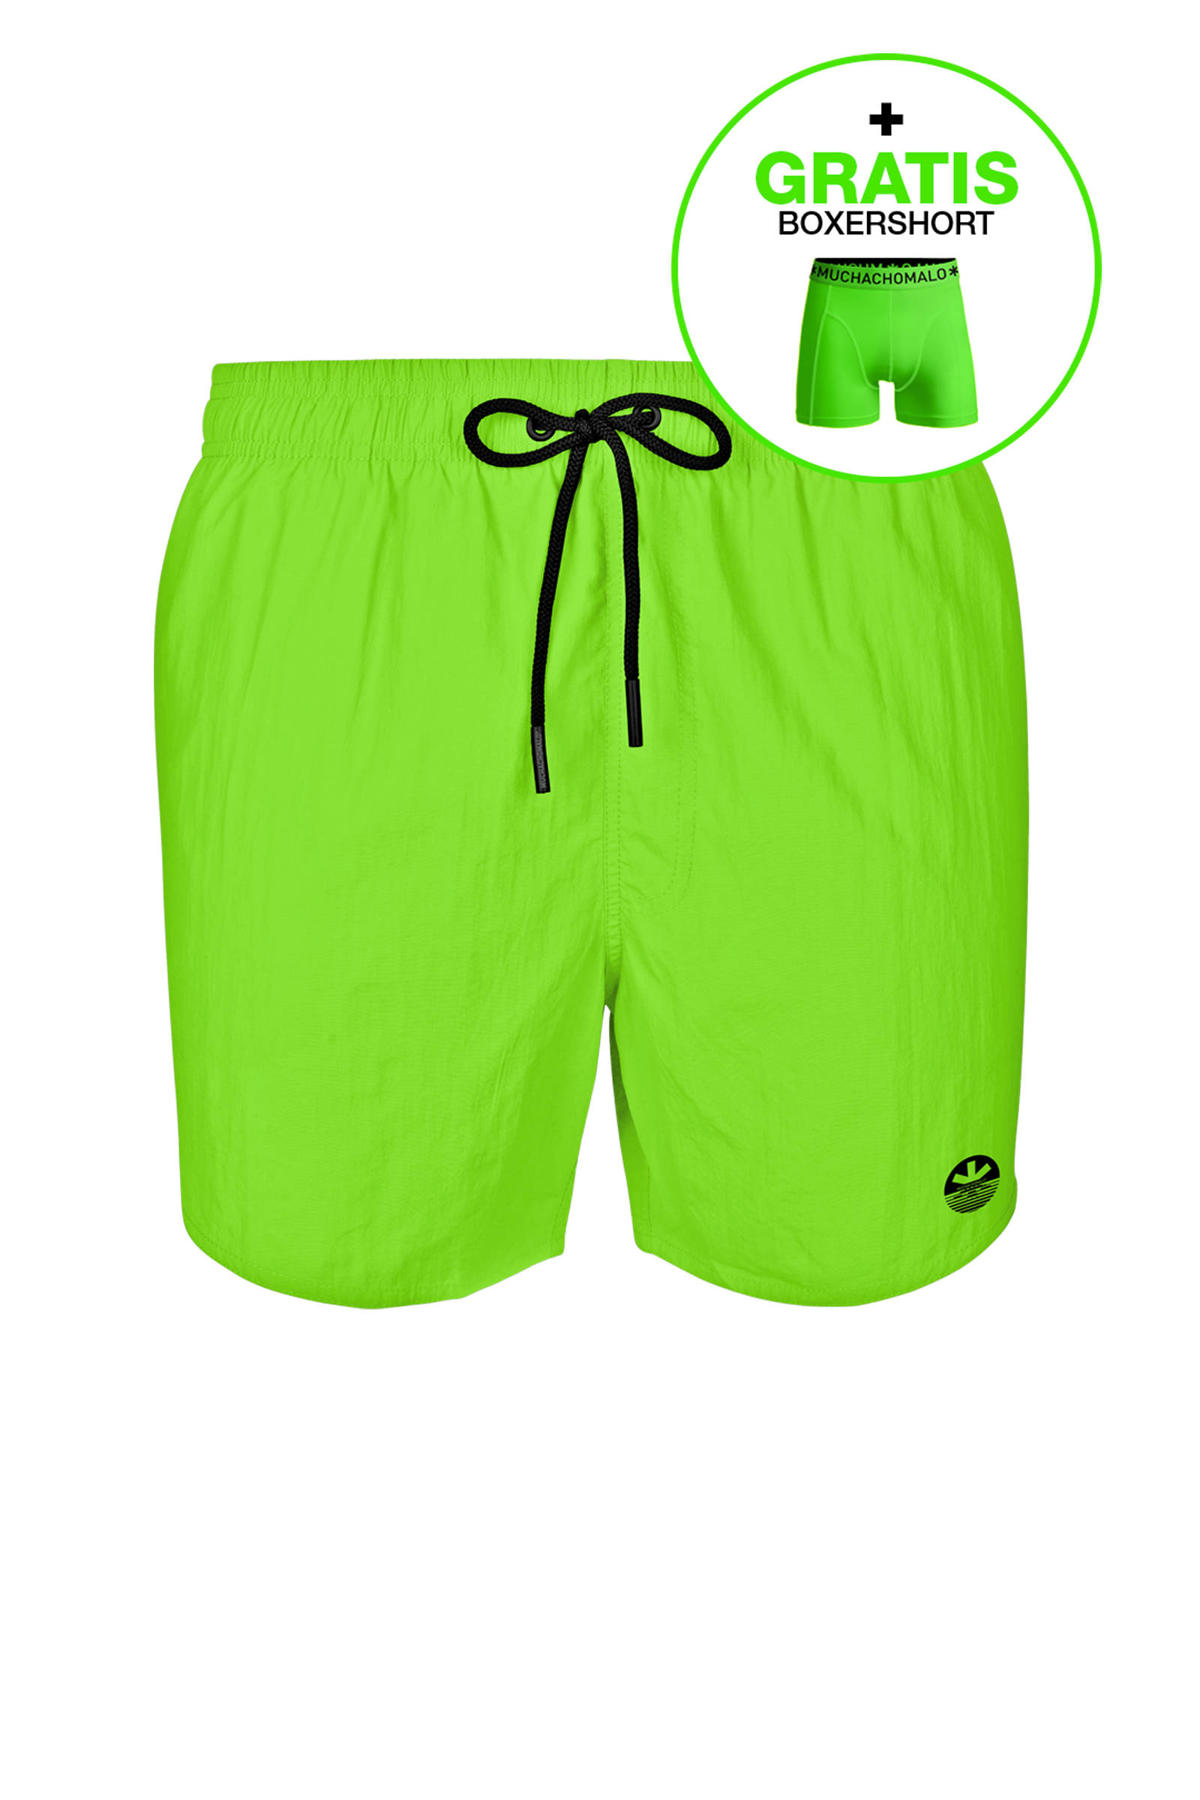 schapen Uitgaan Grijpen Muchachomalo zwemshort + gratis boxershort neon groen | wehkamp